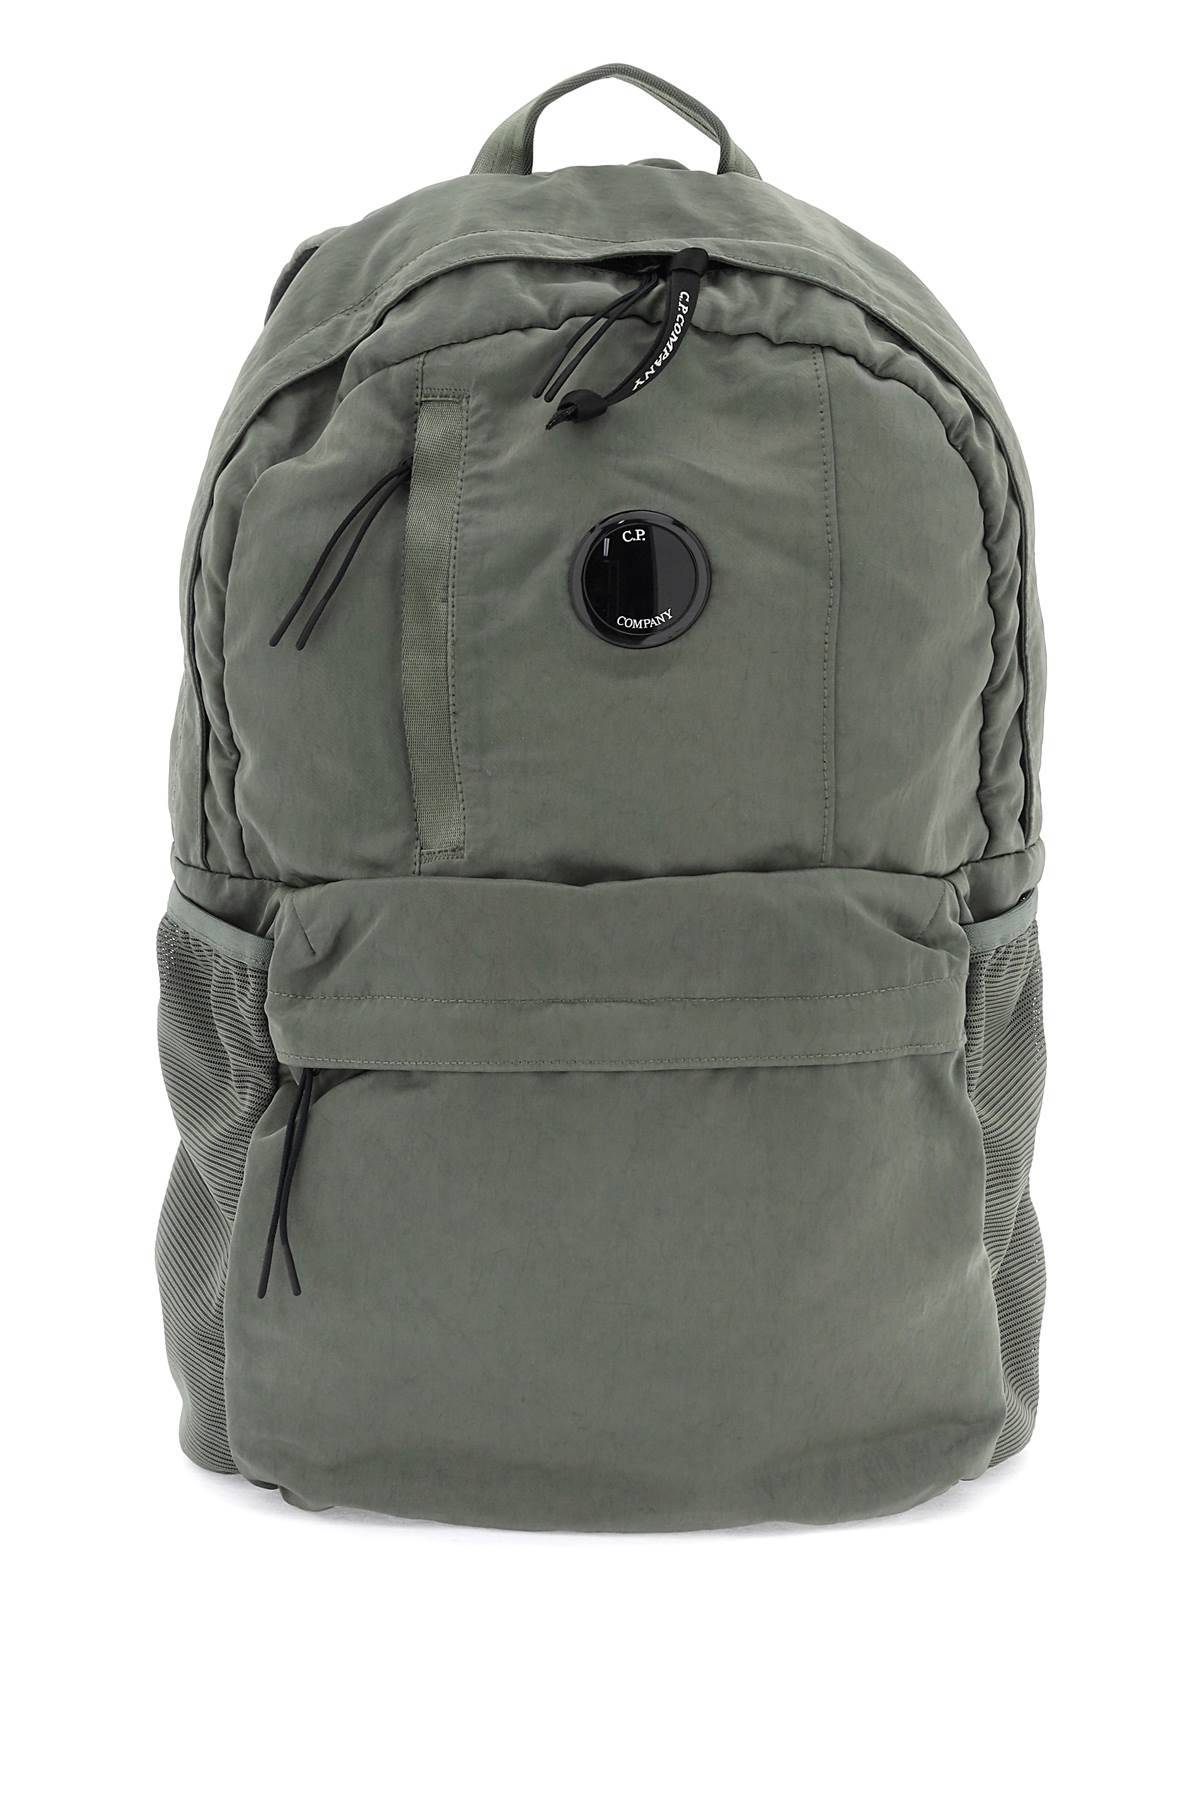 CP COMPANY CP COMPANY nylon b lens backpack